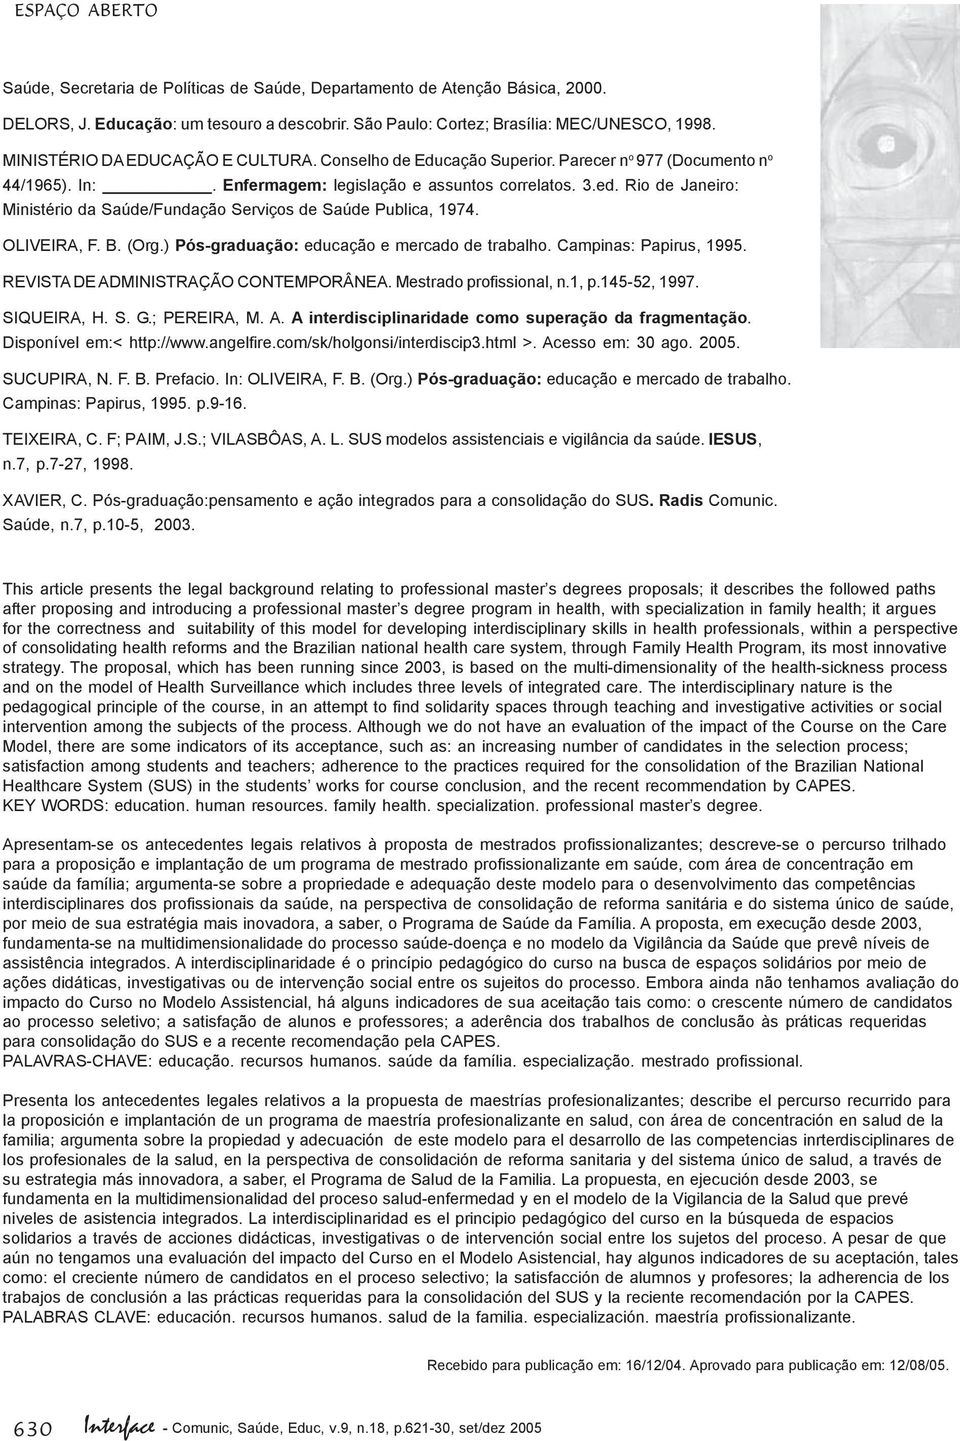 Rio de Janeiro: Ministério da Saúde/Fundação Serviços de Saúde Publica, 1974. OLIVEIRA, F. B. (Org.) Pós-graduação: educação e mercado de trabalho. Campinas: Papirus, 1995.